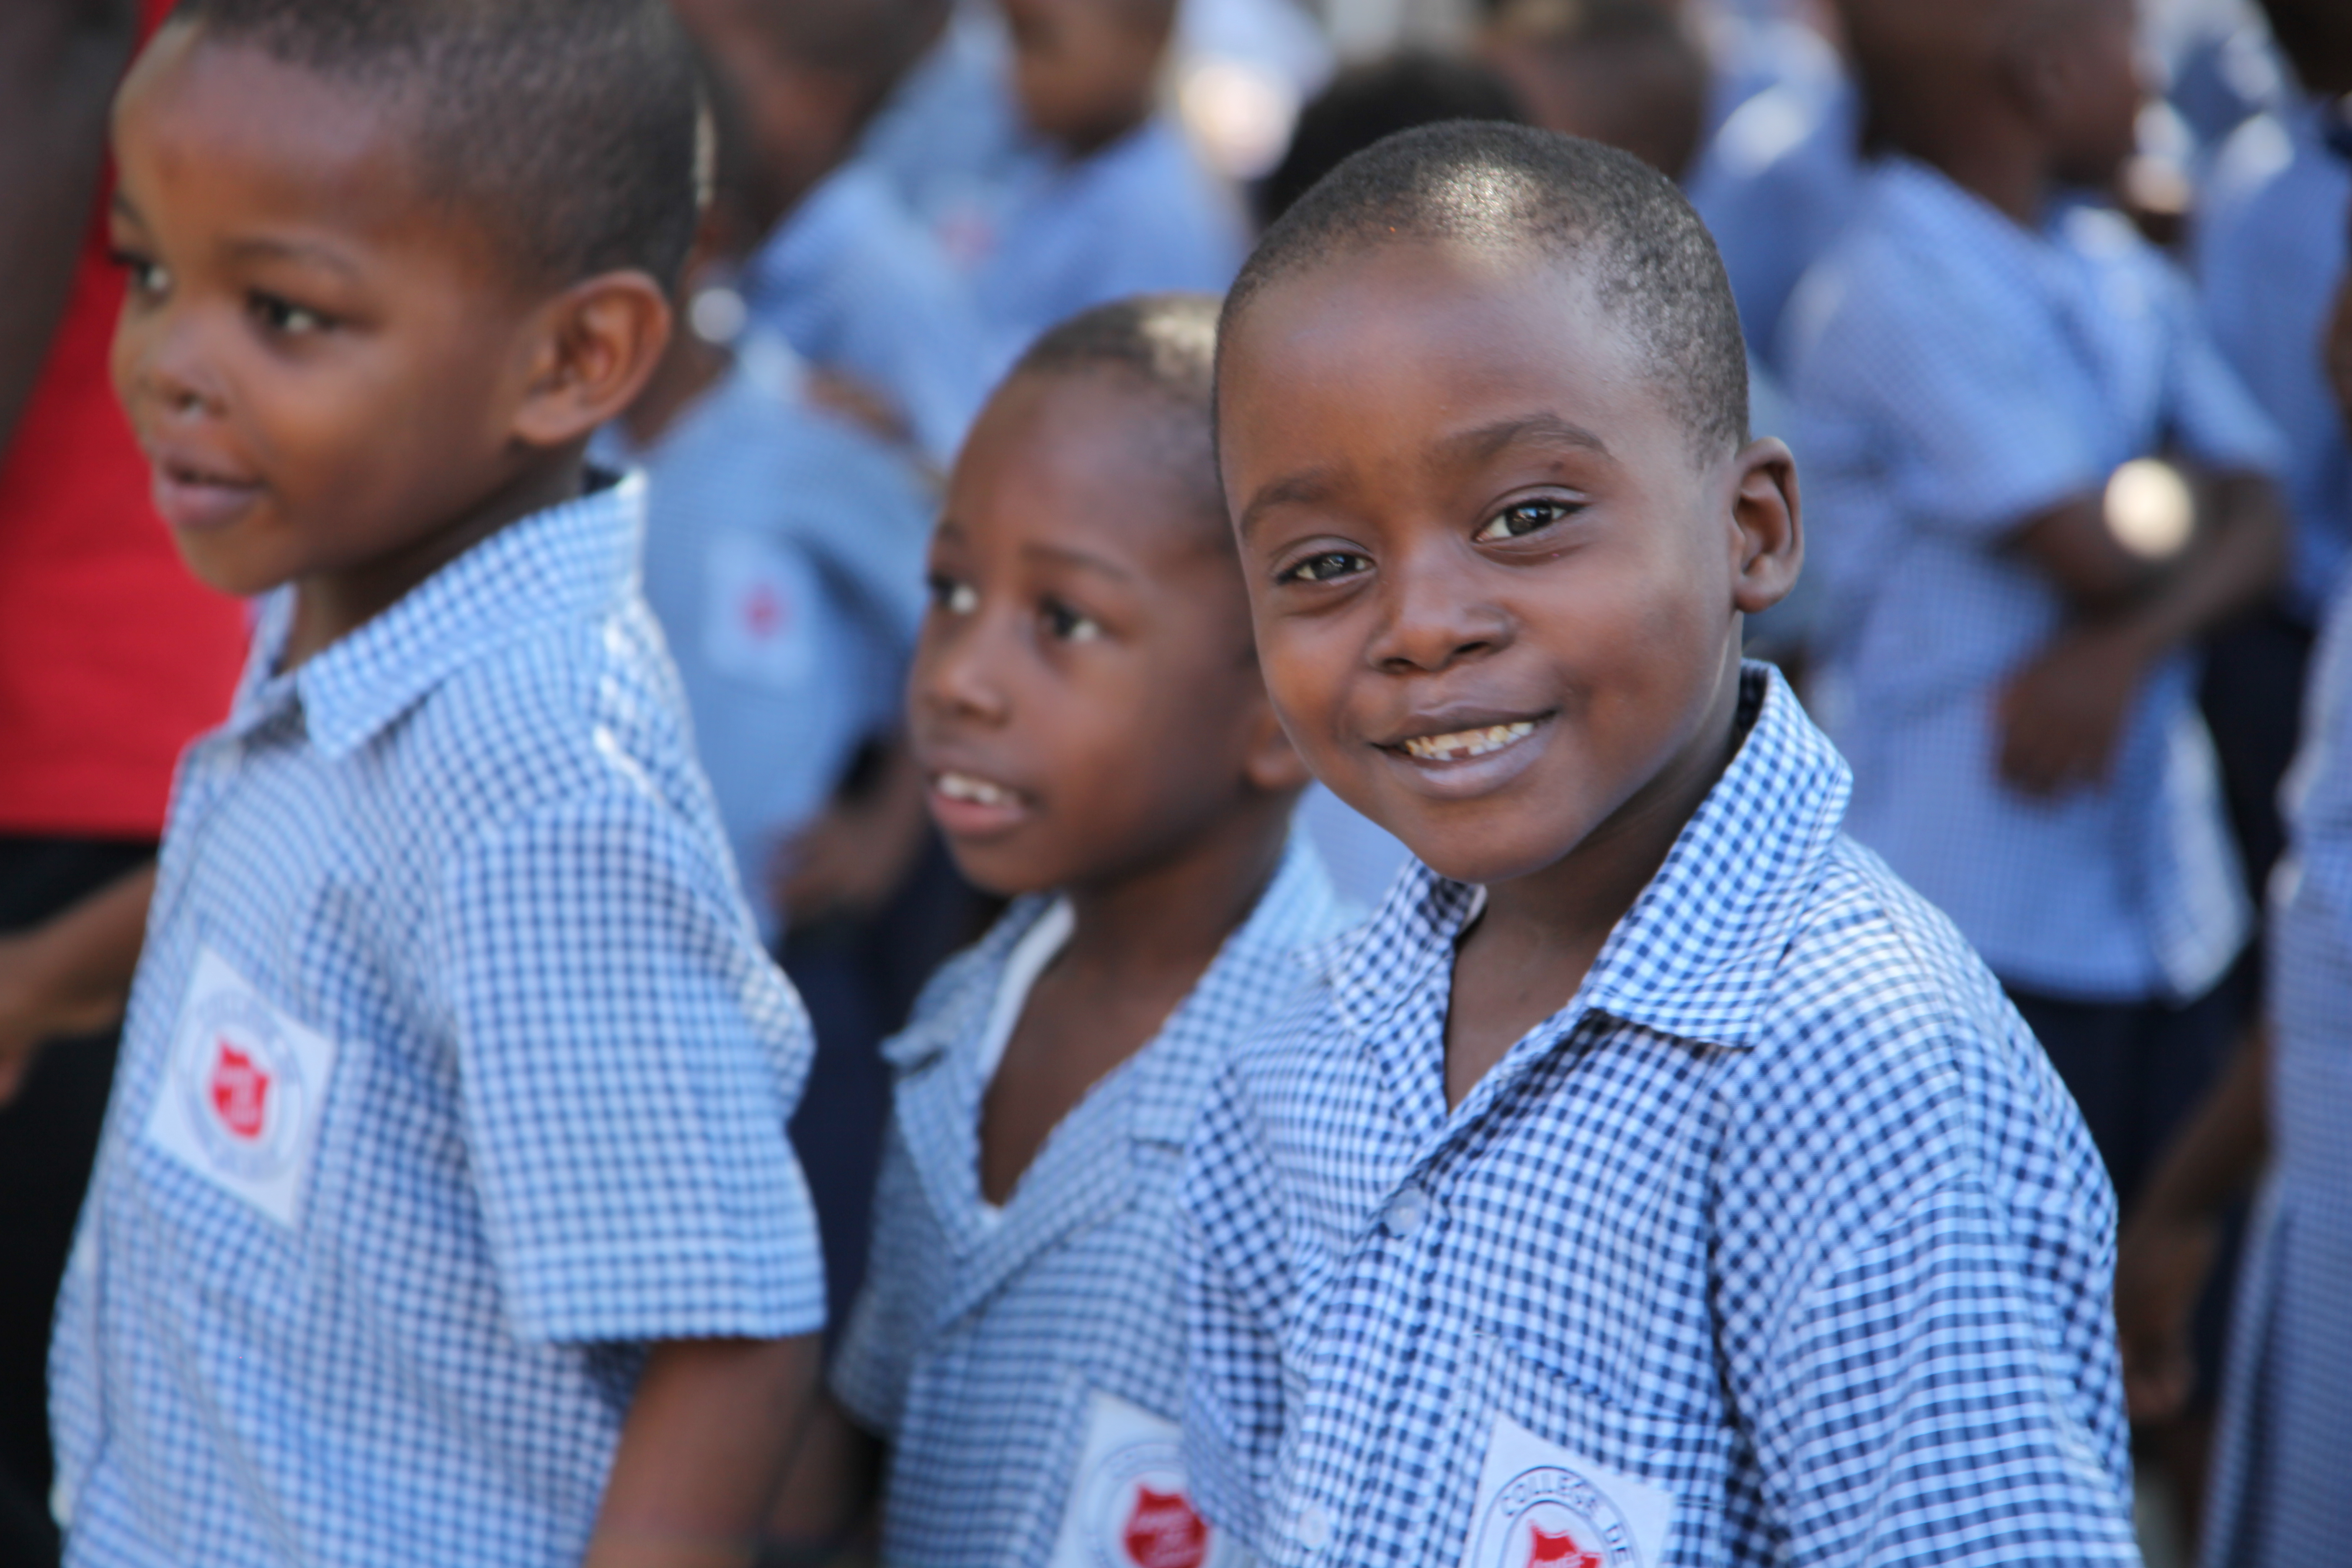 Schuljungen aus Haiti lächeln schüchtern und tragen weiß-blau karierte Schuluniformen. (Quelle: Katja Anger)